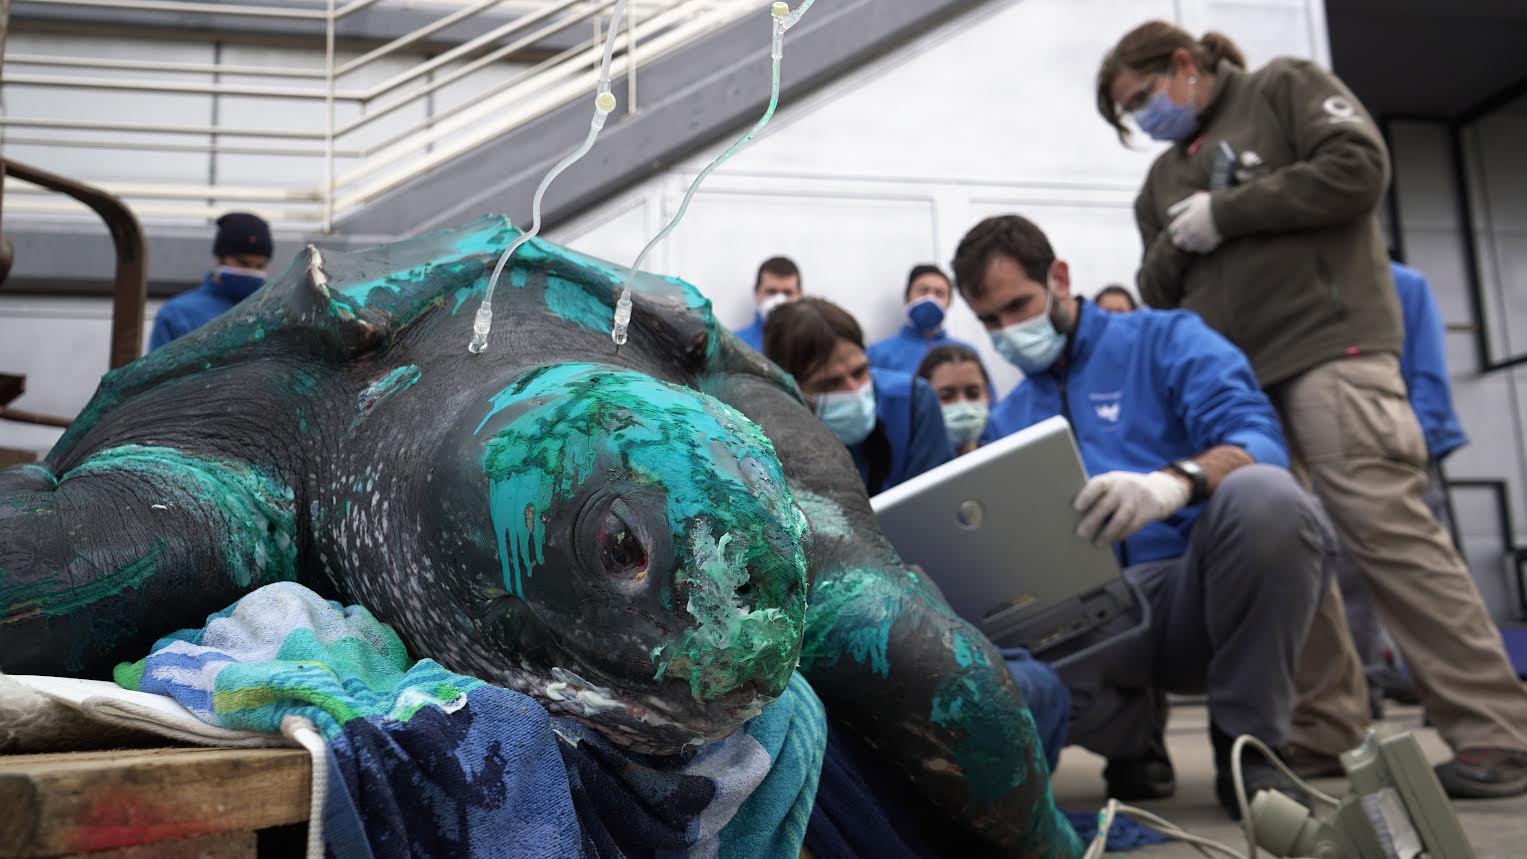 Realización de una ecografía a la tortuga en las instalaciones del Oceanogràfic. Imagen: Oceanogràfic